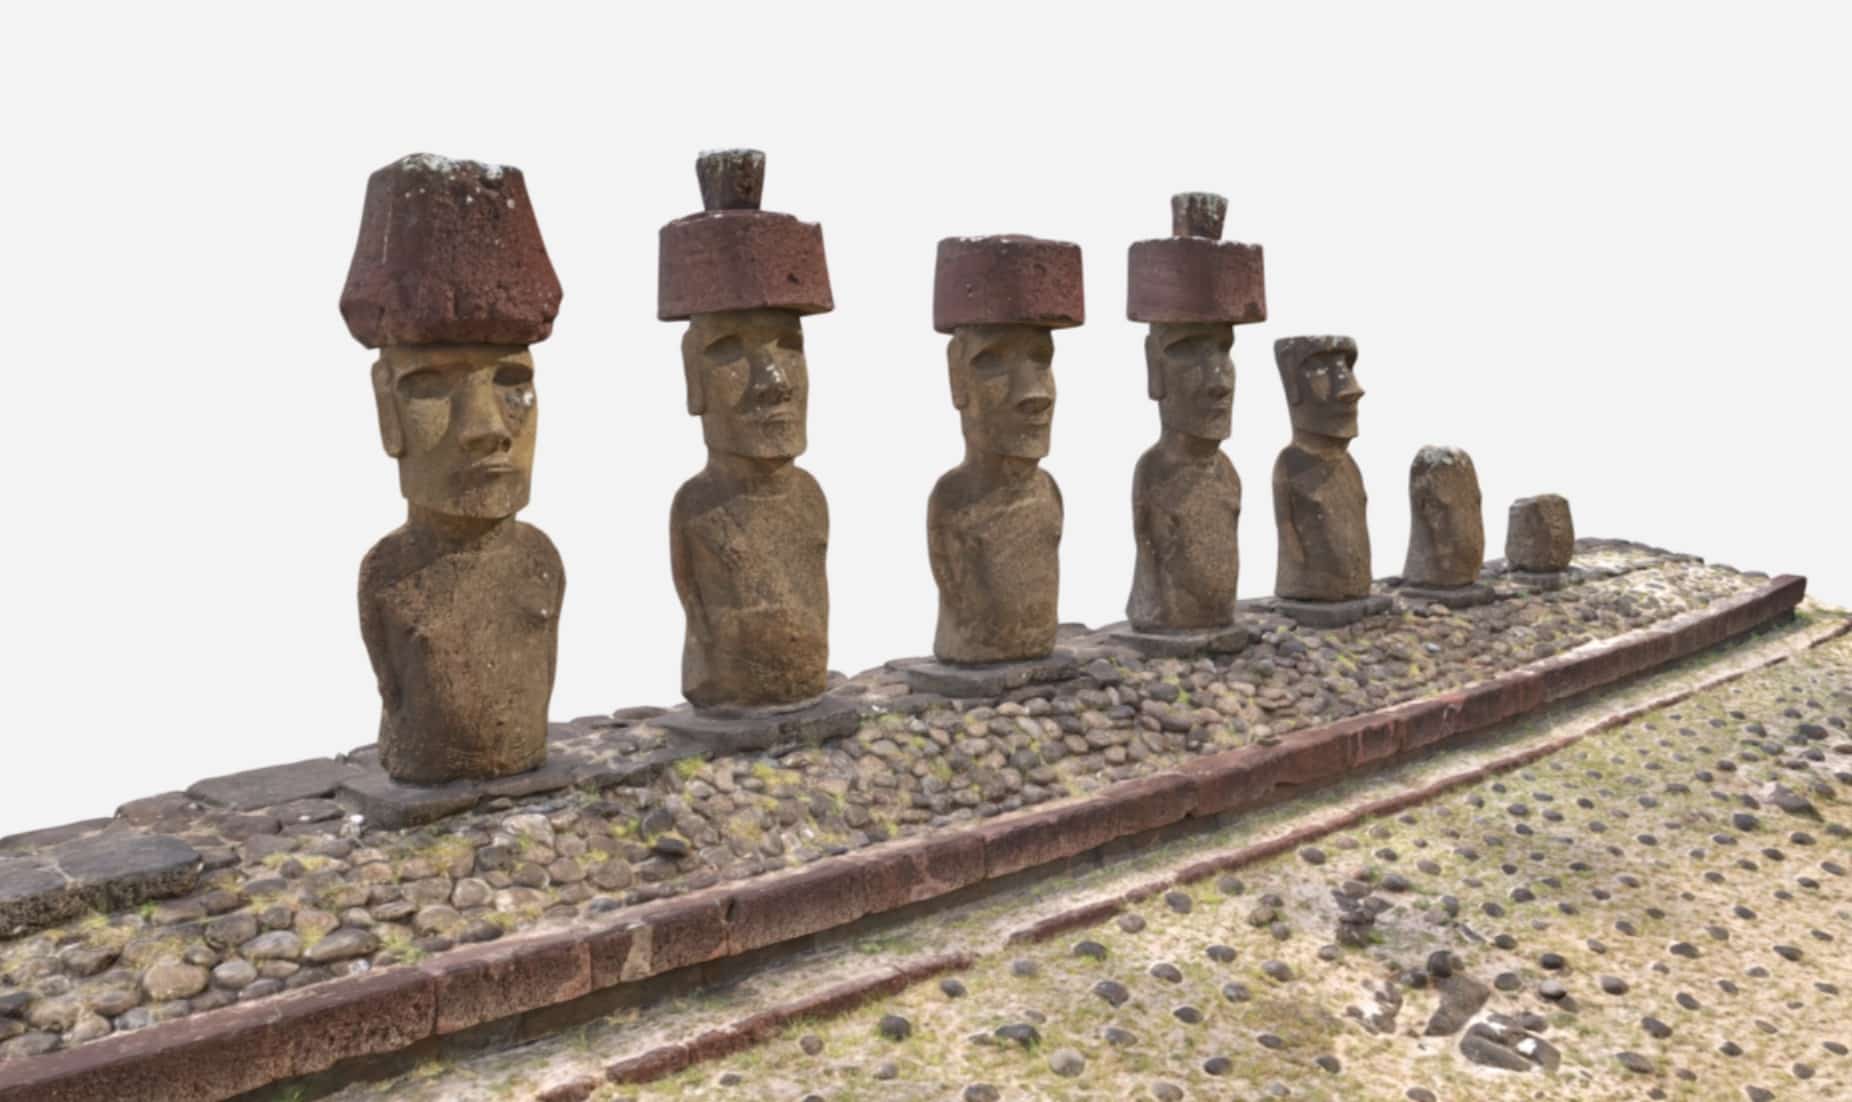 Représentation des statues de l'île de Pâques